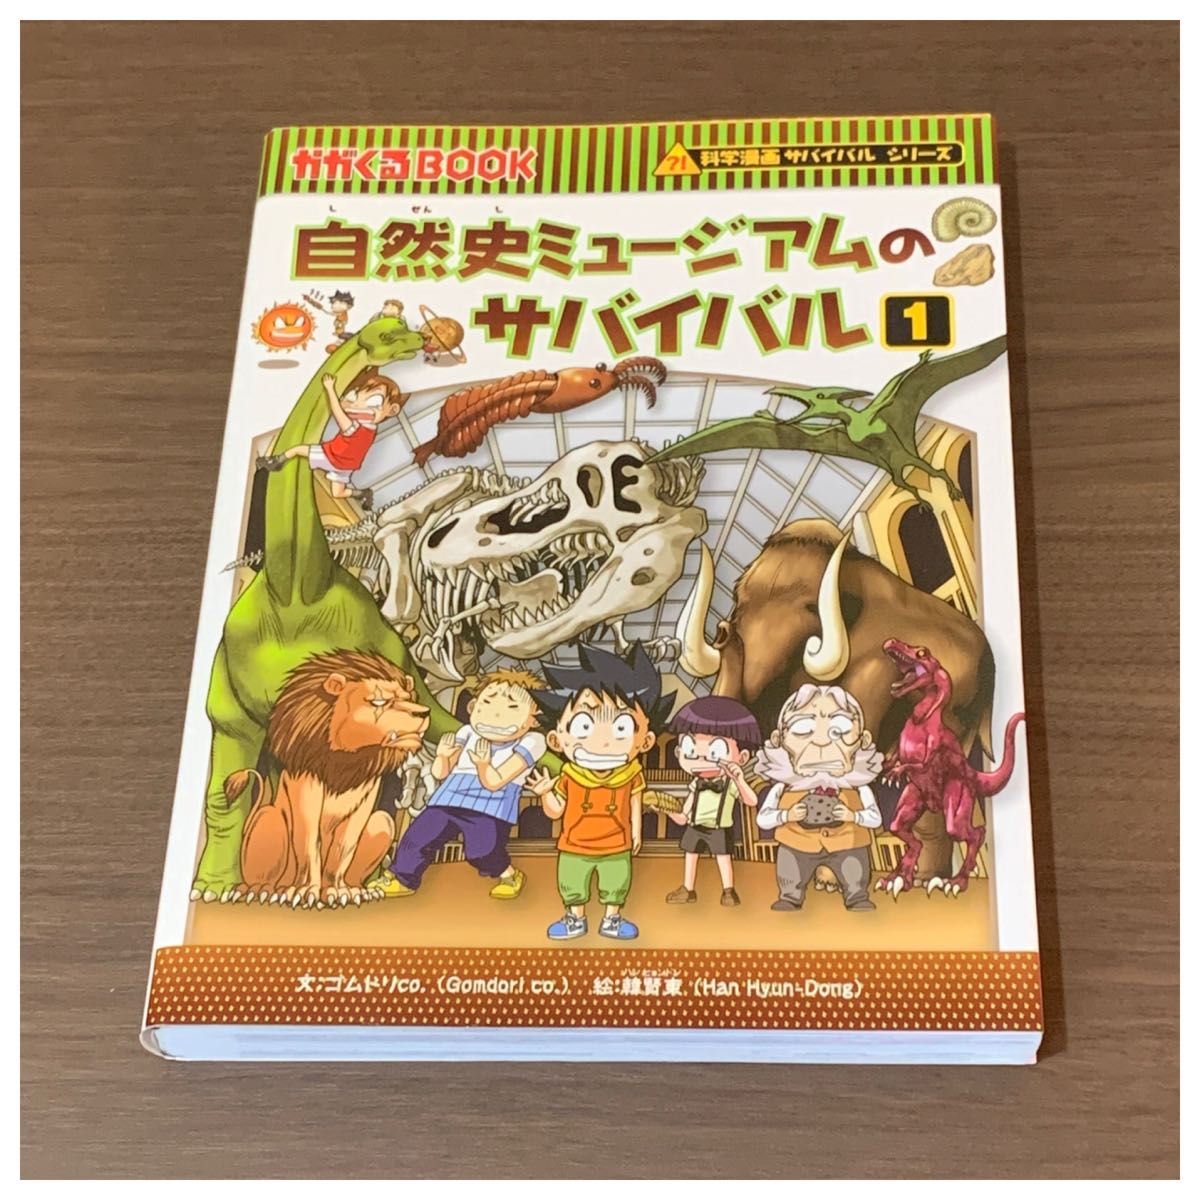 自然史ミュージアムのサバイバル1 かがくるBOOK 科学漫画サバイバルシリーズ 朝日新聞出版